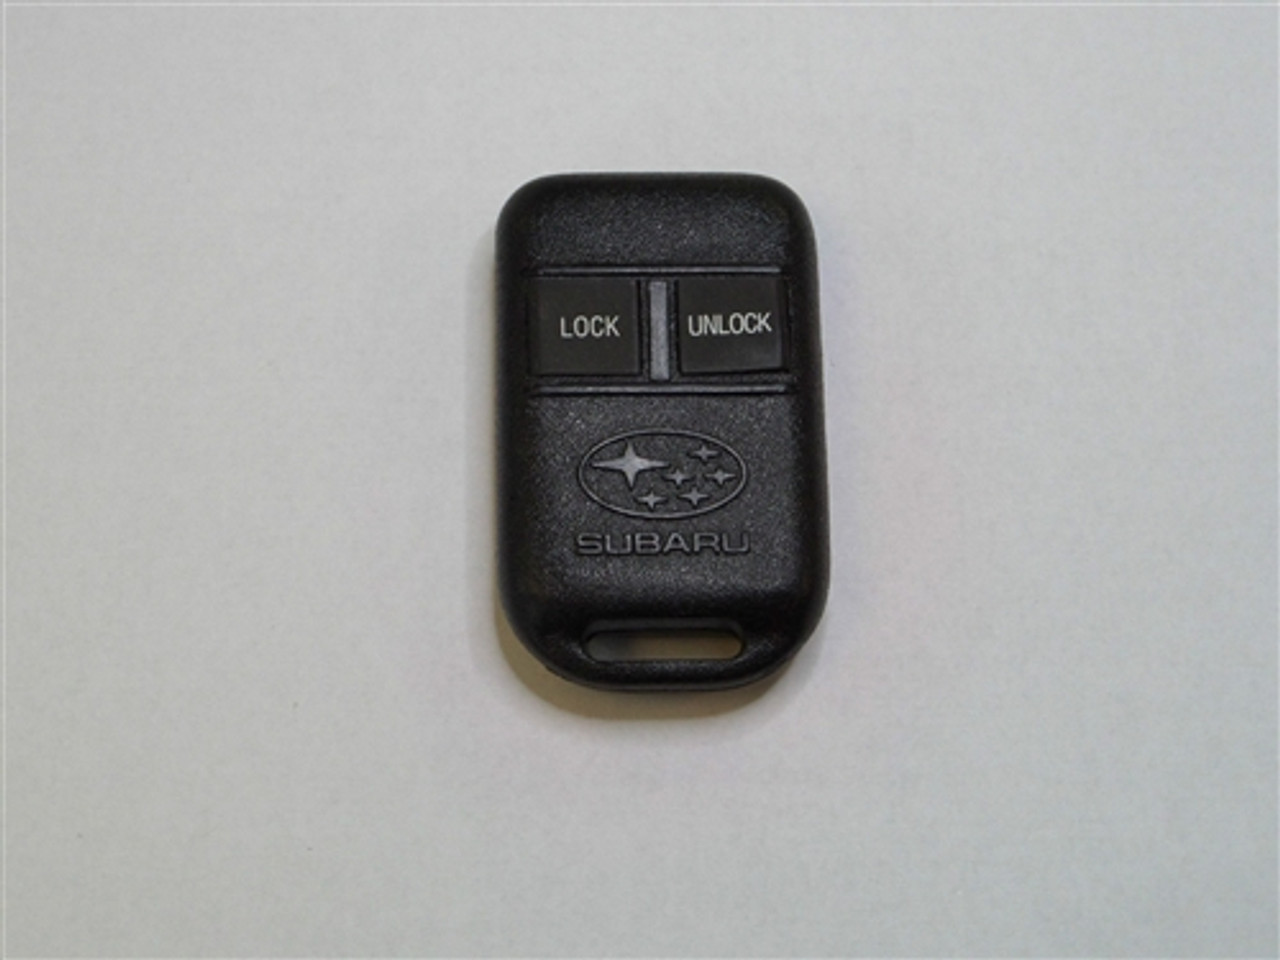 FORD GOH-M24 keyless entry remote key fob transmitter clicker